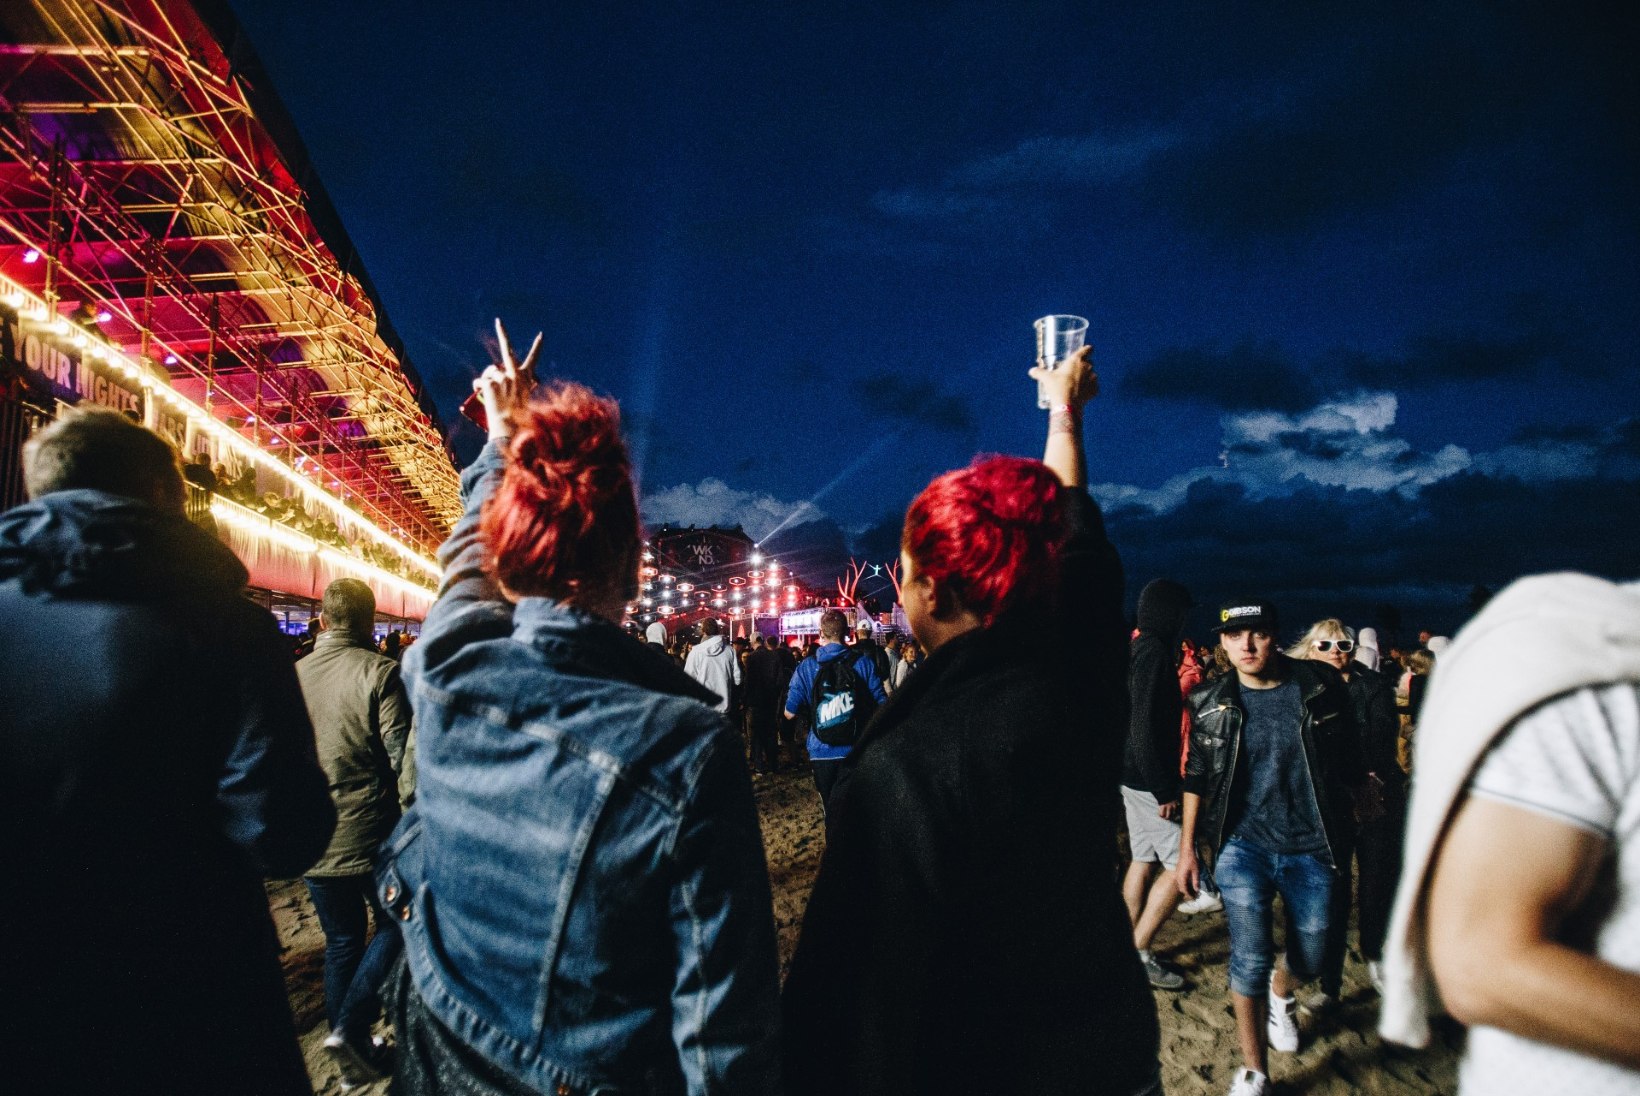 ÕHTULEHE HIIGELGALERII | Kõik Weekendi pildid ühes kohas - leia end ja meenuta festivalimöllu!